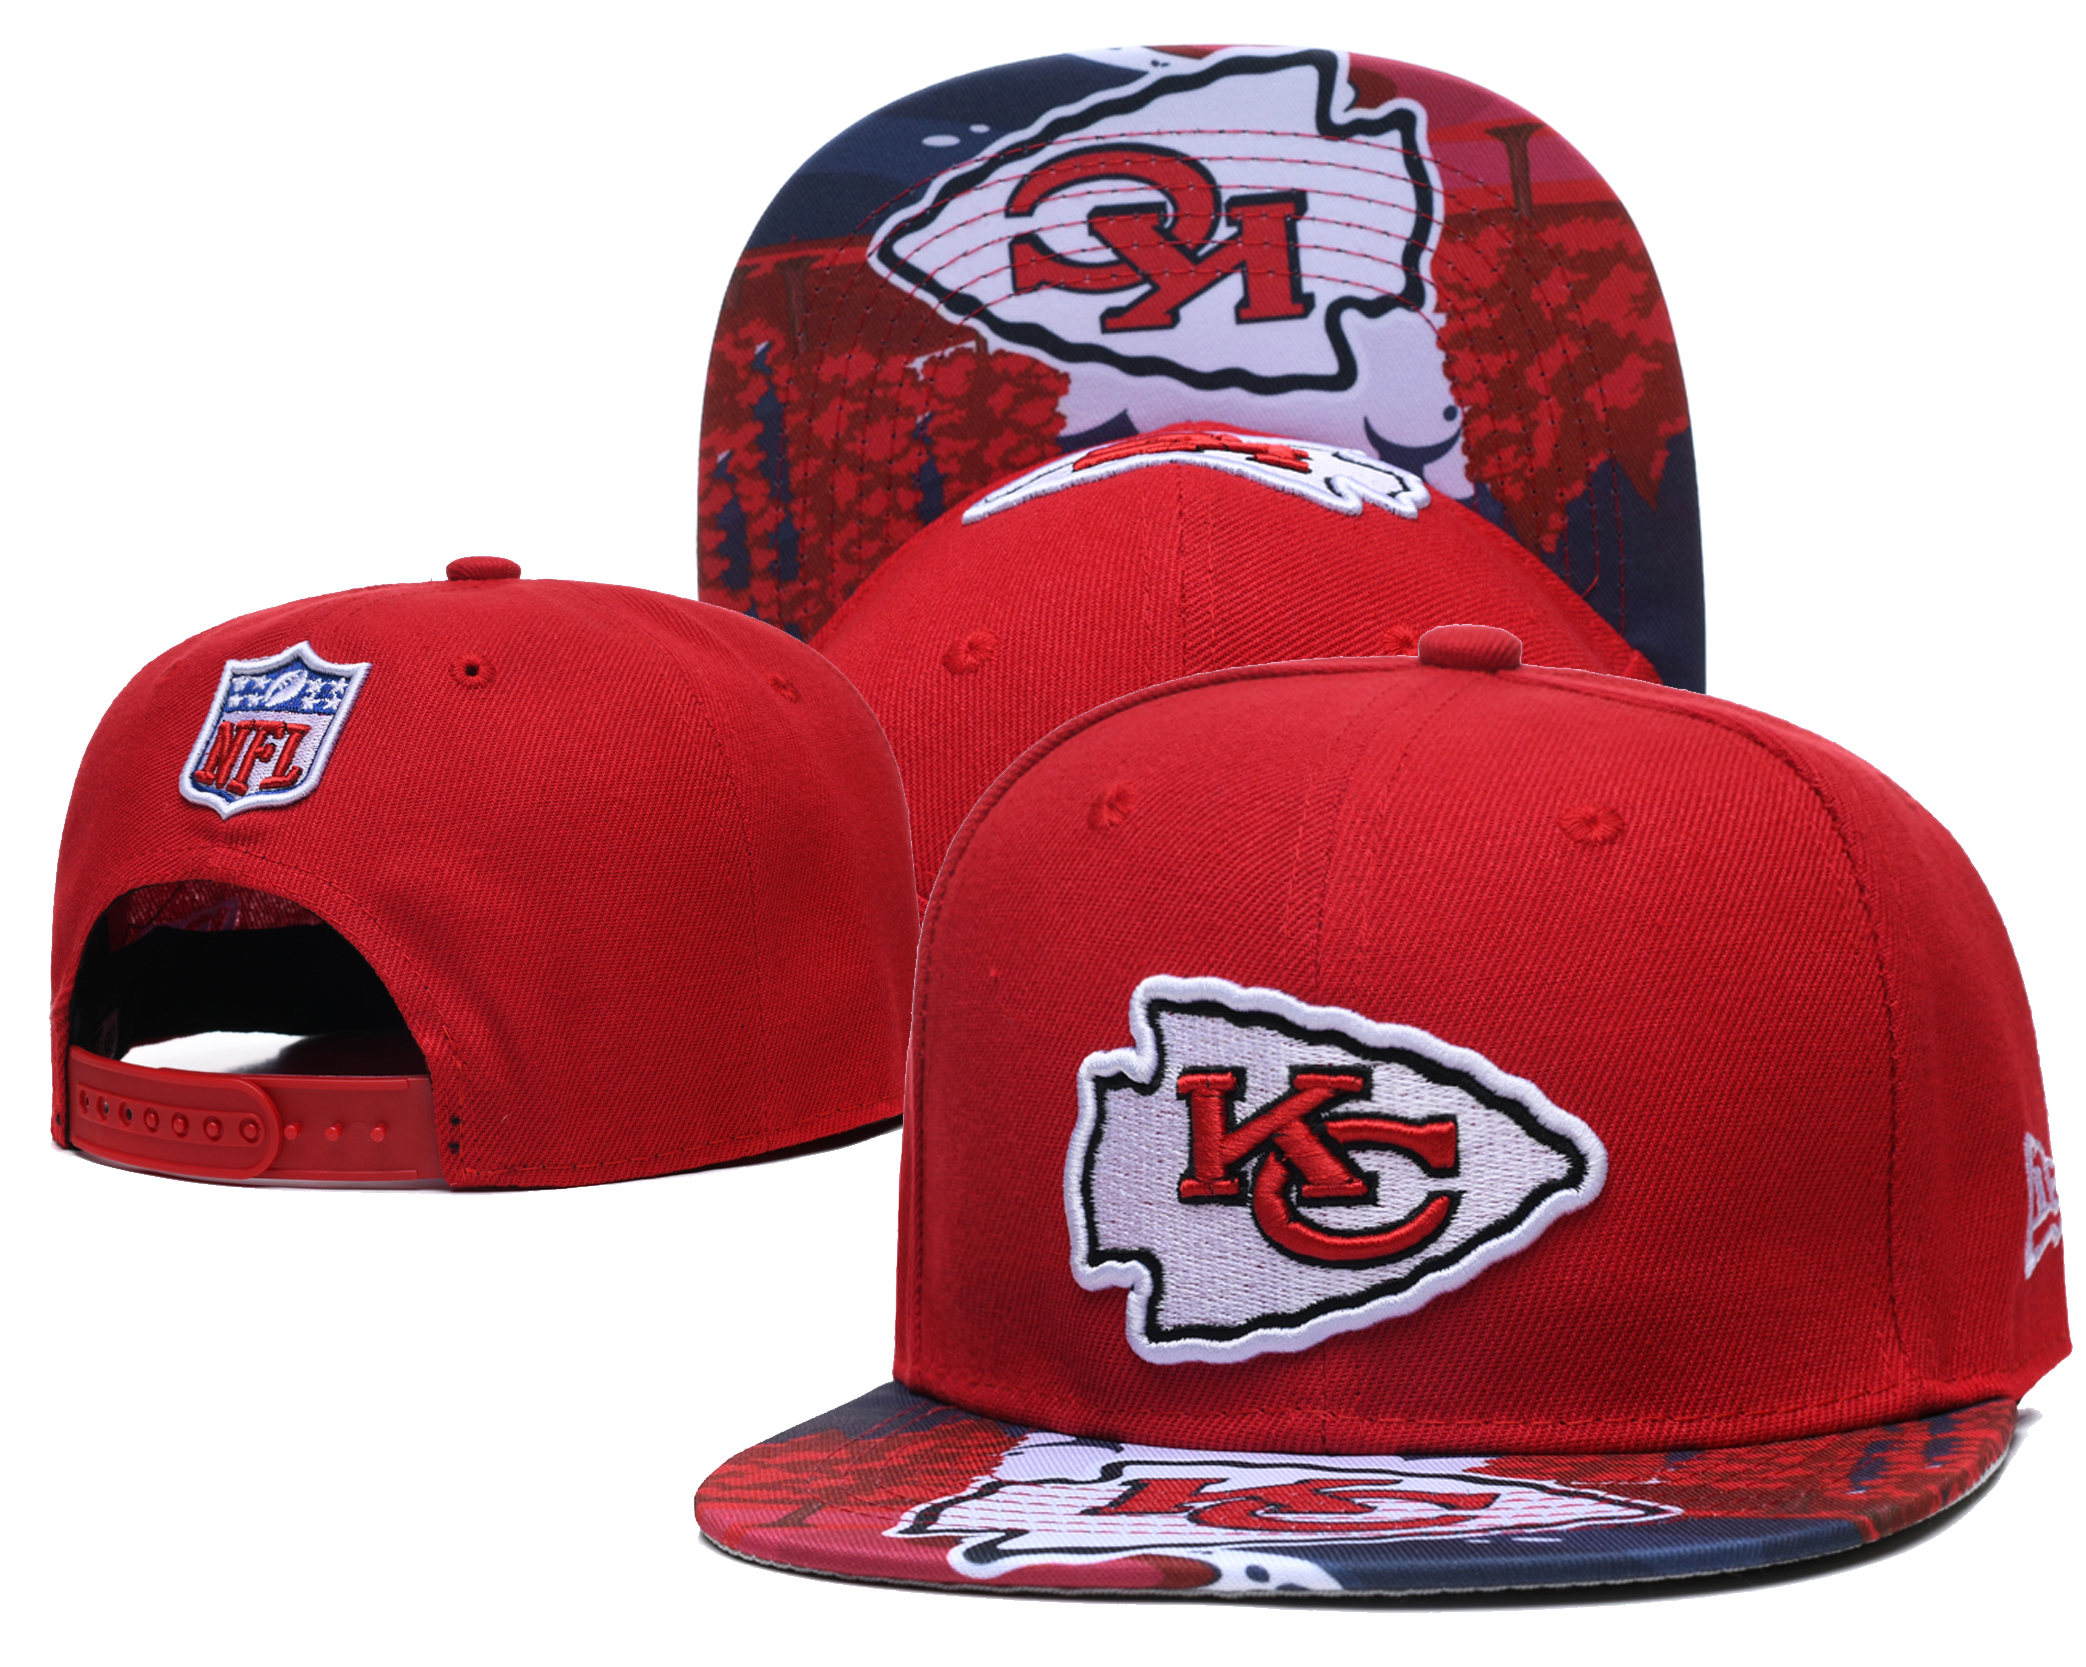 Chiefs Team Logo Red Adjustable Hat LH